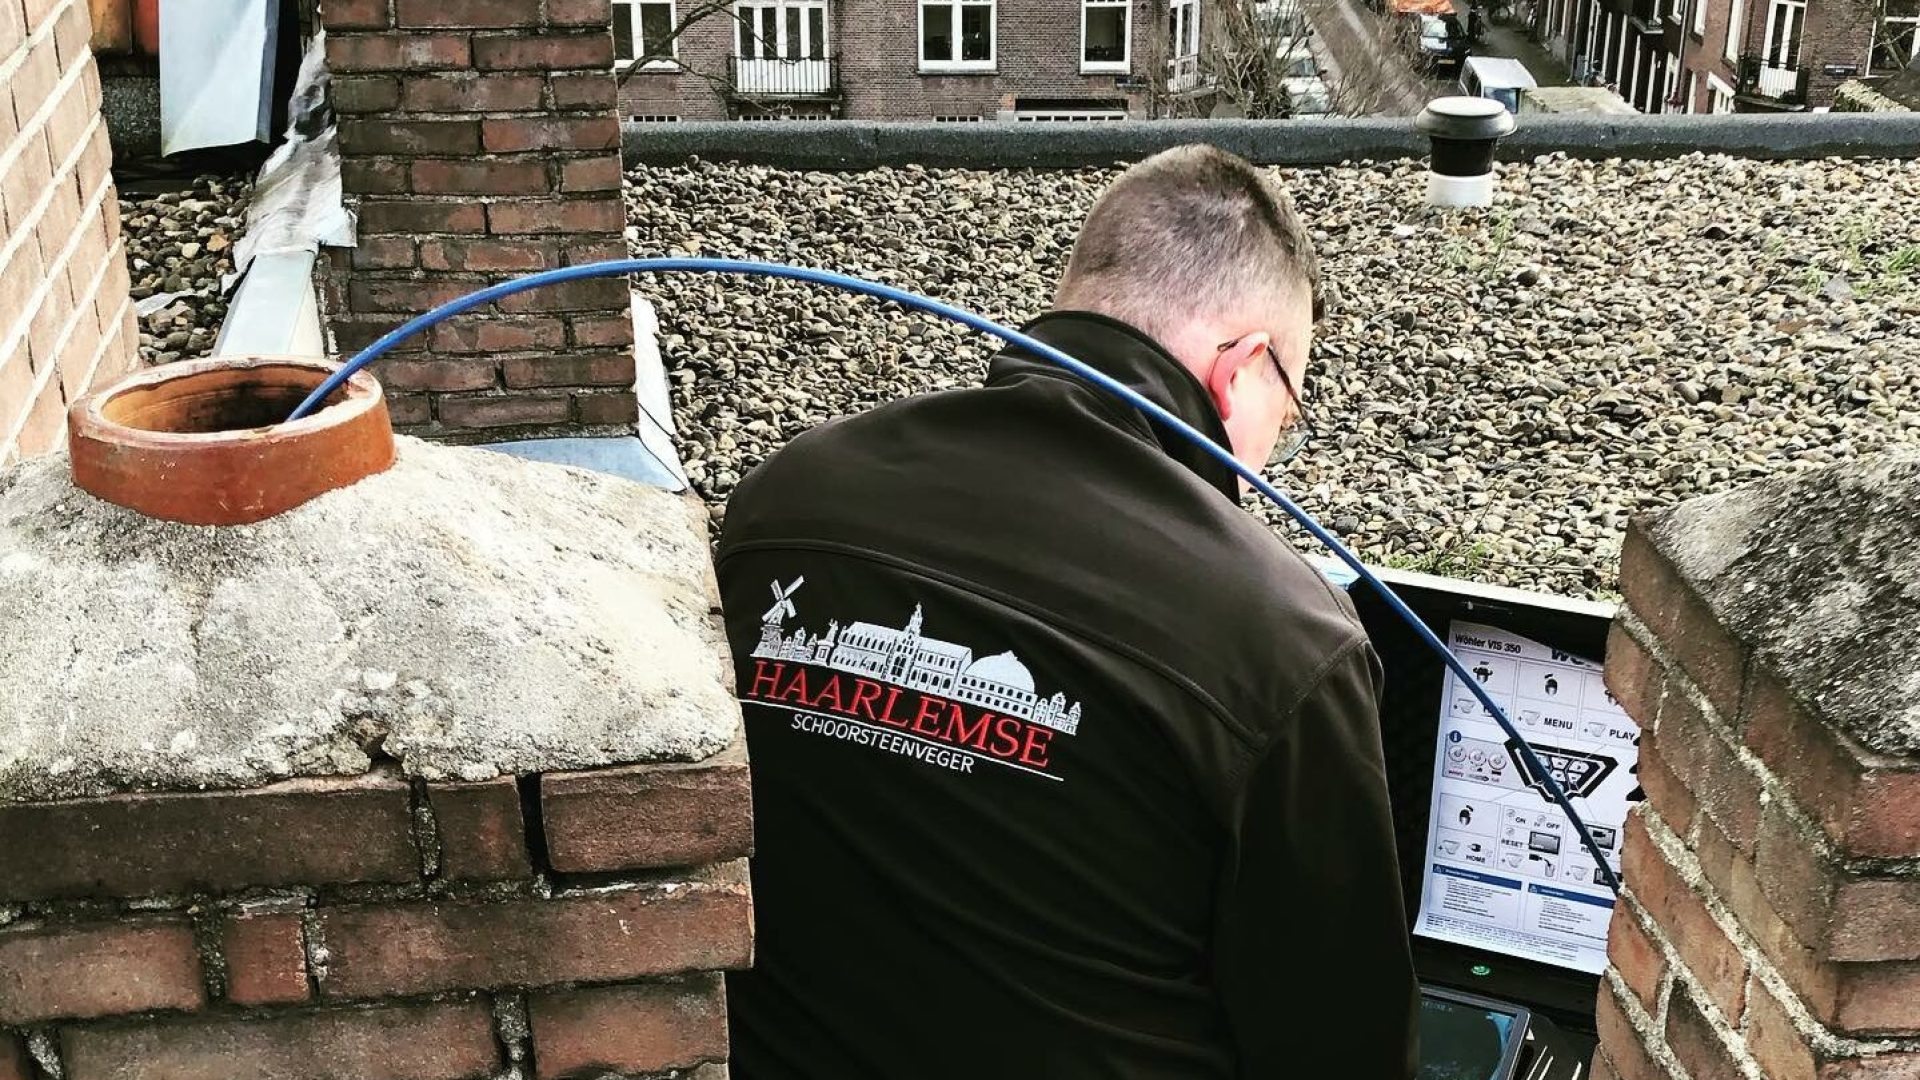 Schoorsteenveger Haarlem schoorsteen inspectie rookkanaal